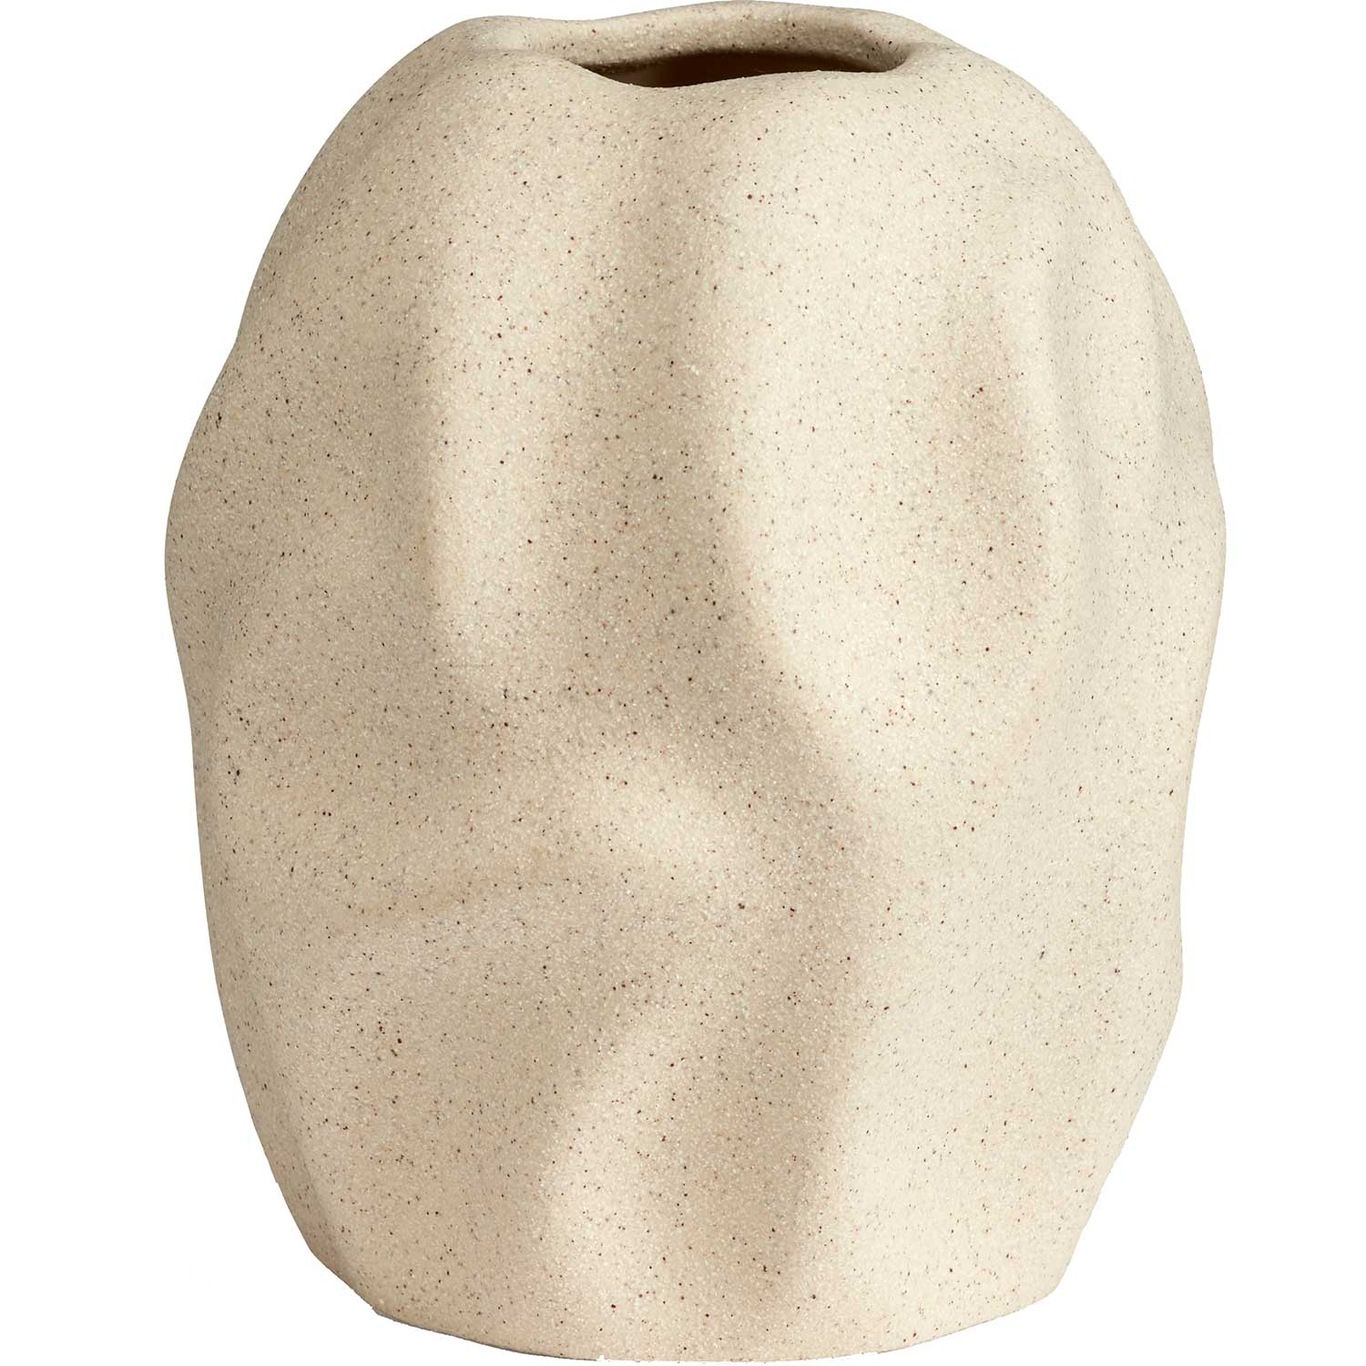 Drift Desert Vase, 16 cm